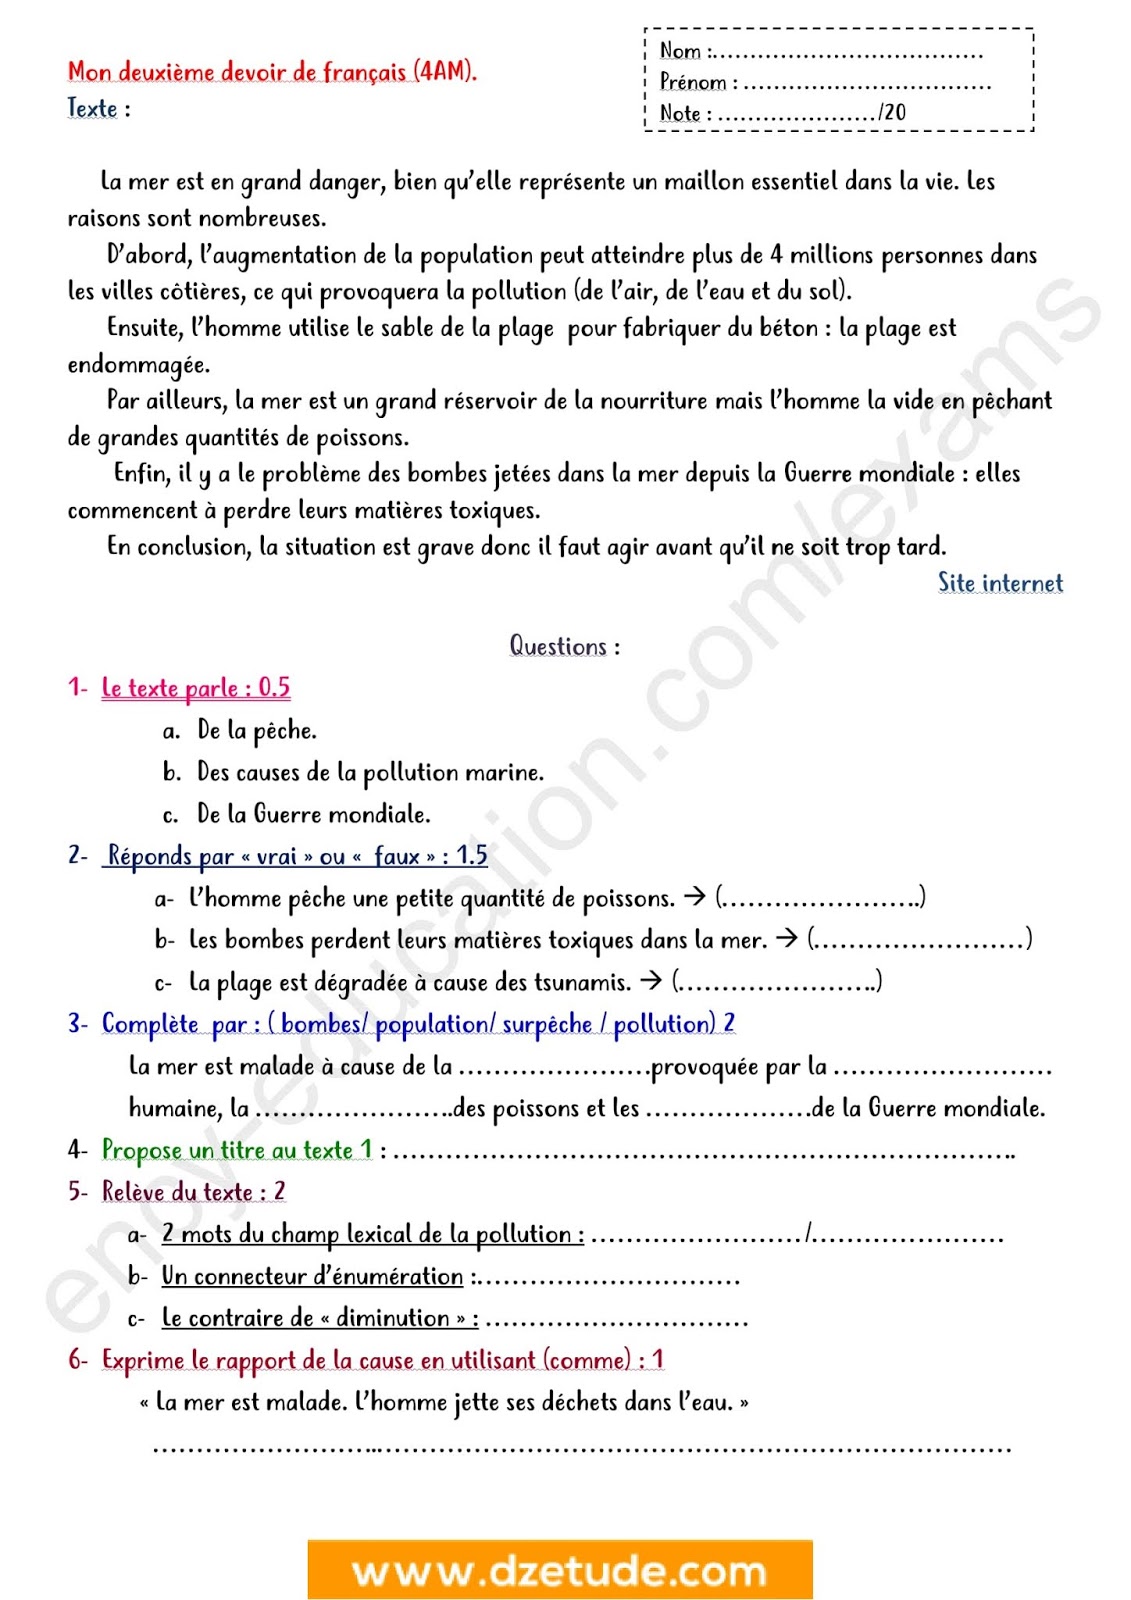 فرض الفصل الأول في اللغة الفرنسية للسنة الرابعة متوسط - الجيل الثاني نموذج 3